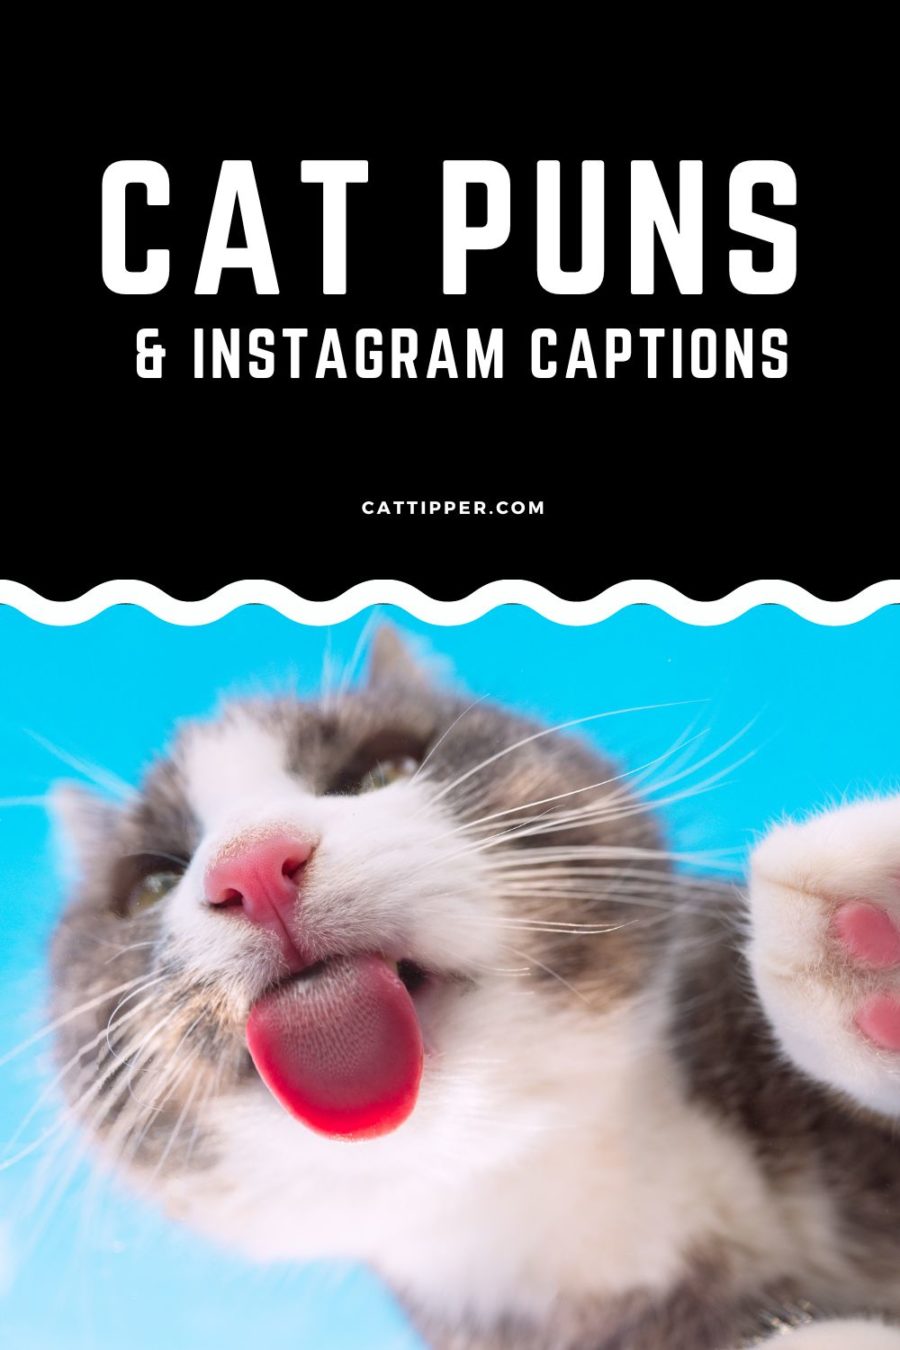 Cat Puns (and Purr-fect Instagram Captions!)